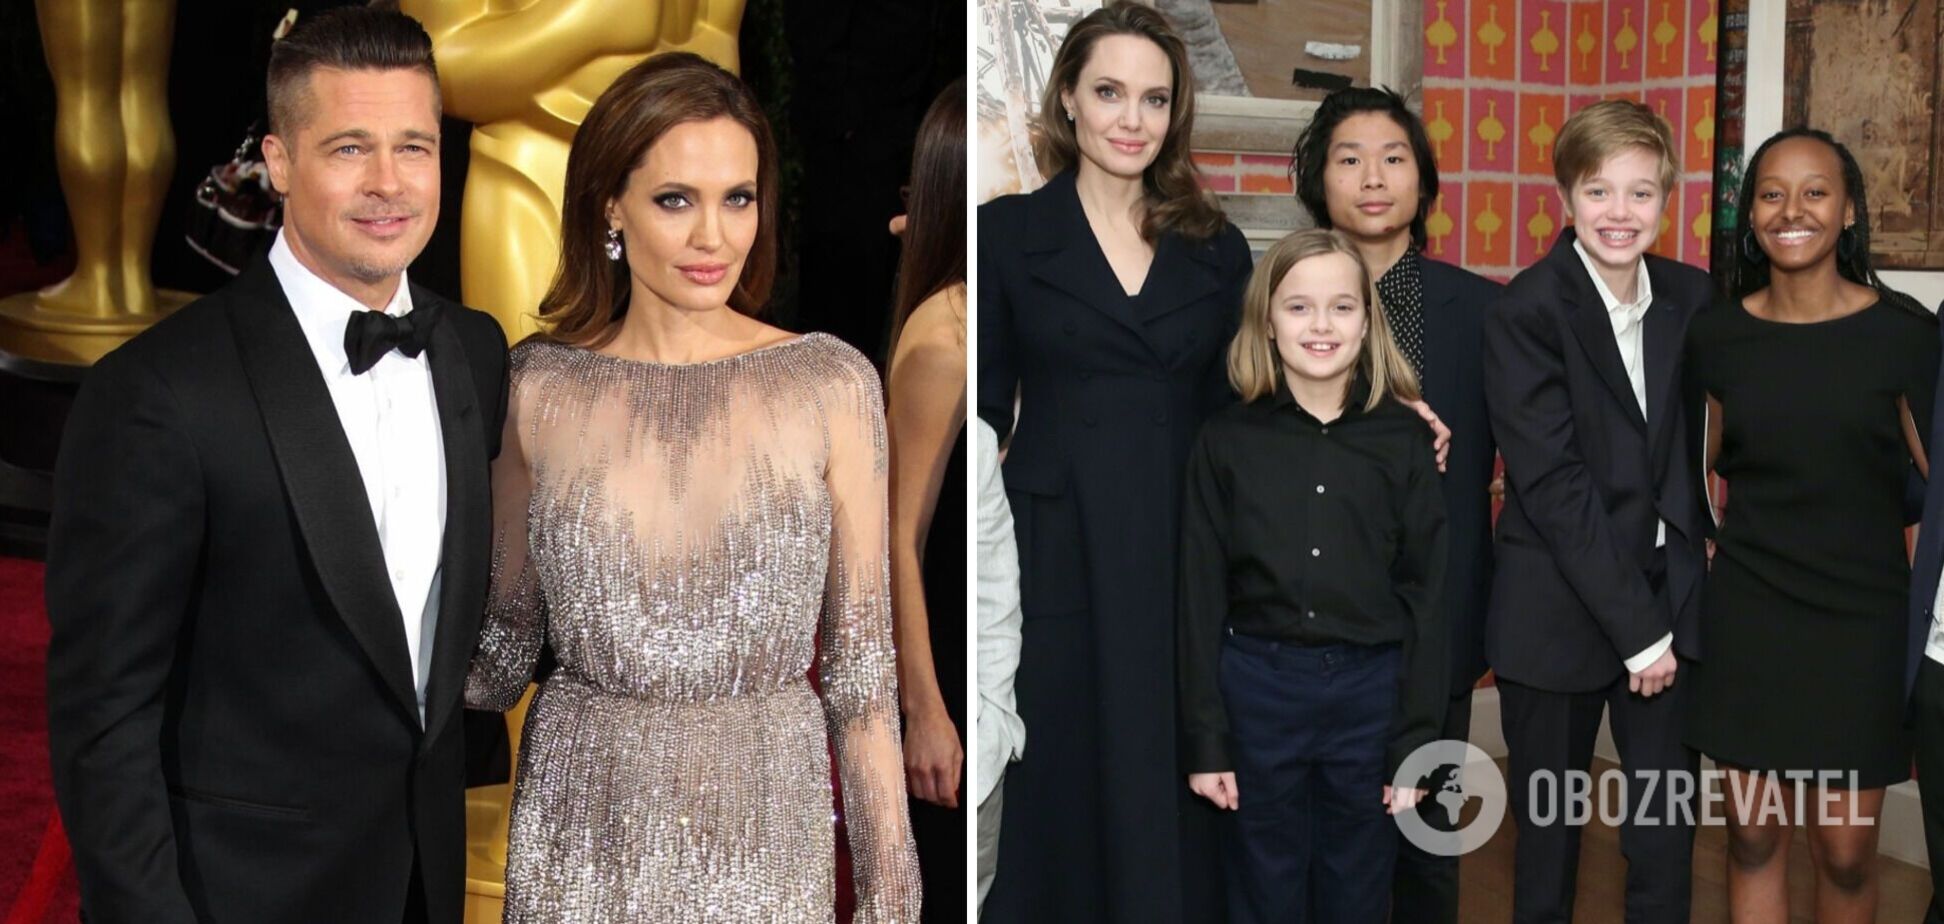 Судебные разборки и громкие скандалы: как сложилась судьба детей Анджелины Джоли и как они выглядят сейчас. Фото